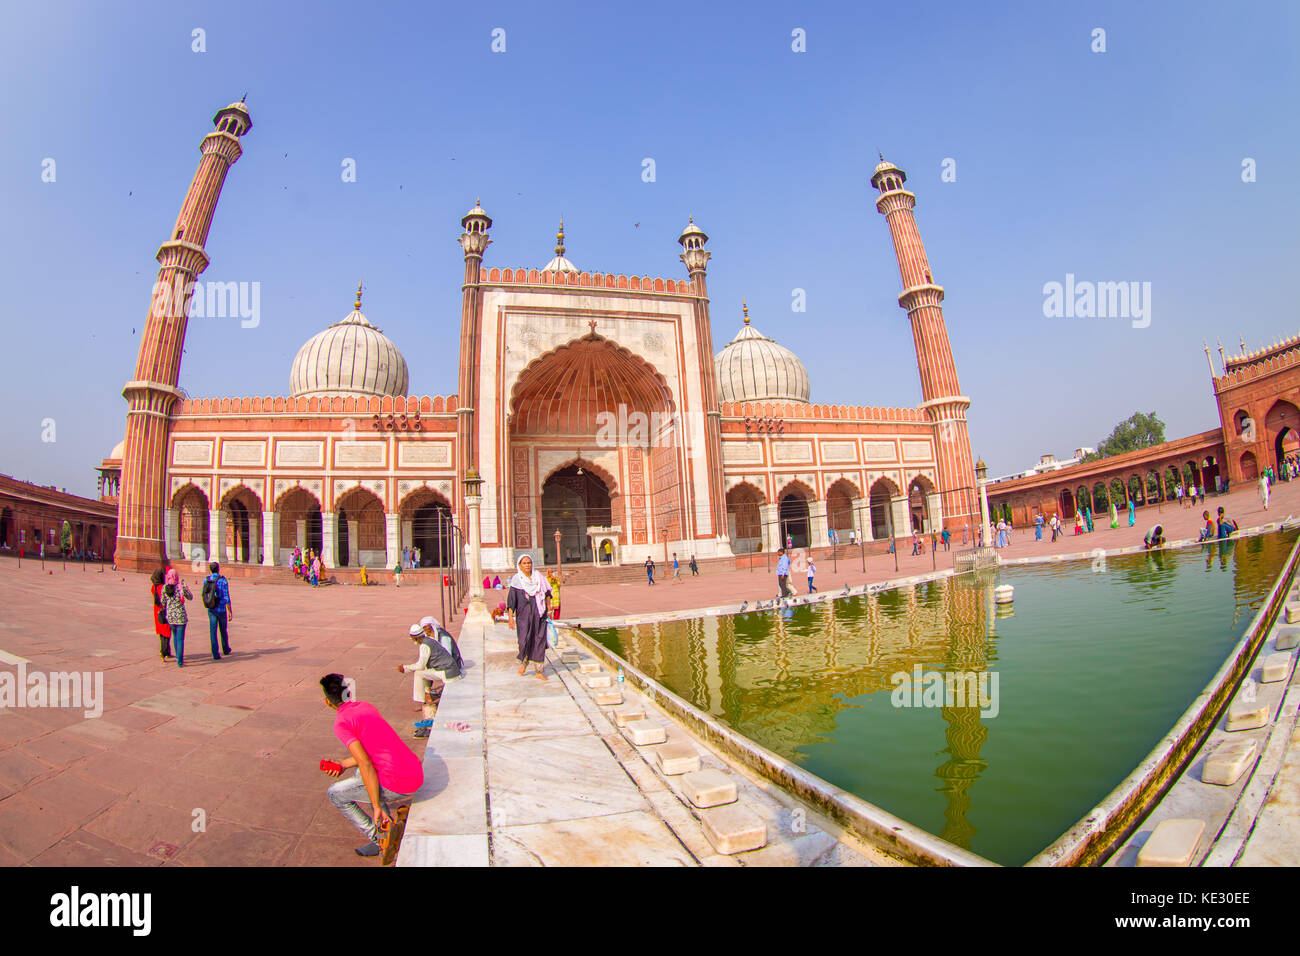 Delhi, Indien - 27. September 2017: unbekannte Menschen zu Fuß in der Nähe des künstlichen Teich vor einem wunderschönen Jama Masjid Tempel, das ist die größte Moschee in Indien Delhi, Indien, Fischaugen-Effekt Stockfoto